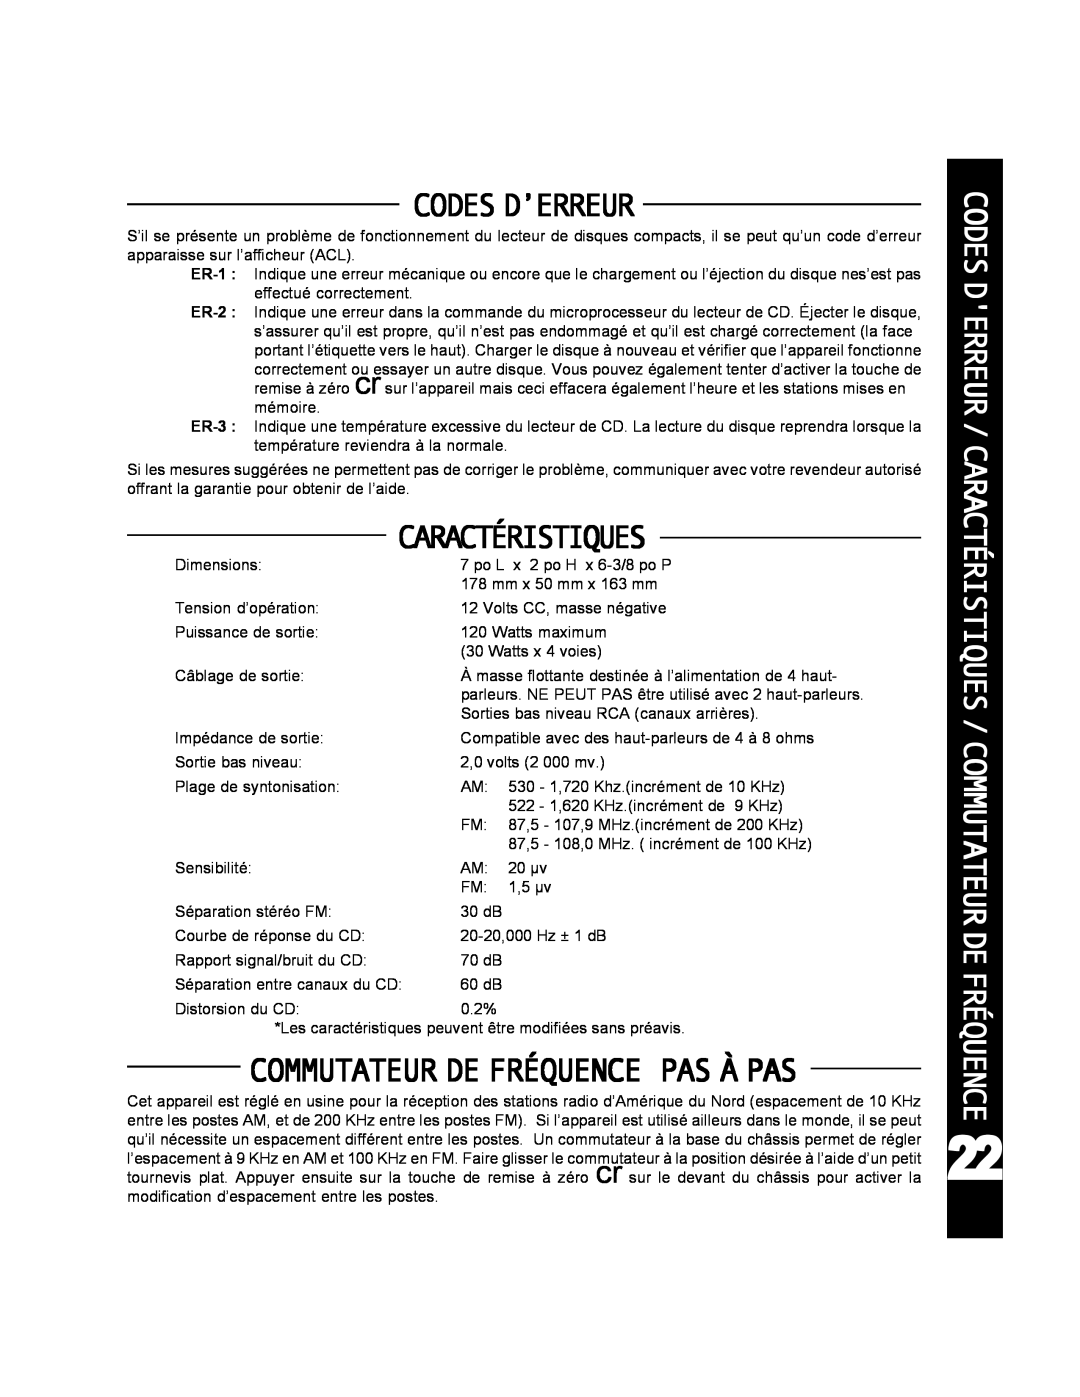 Audiovox ACD-25 manual Codes D’Erreur, Commutateur De Fréquence Pas À Pas, Caractéristiques 